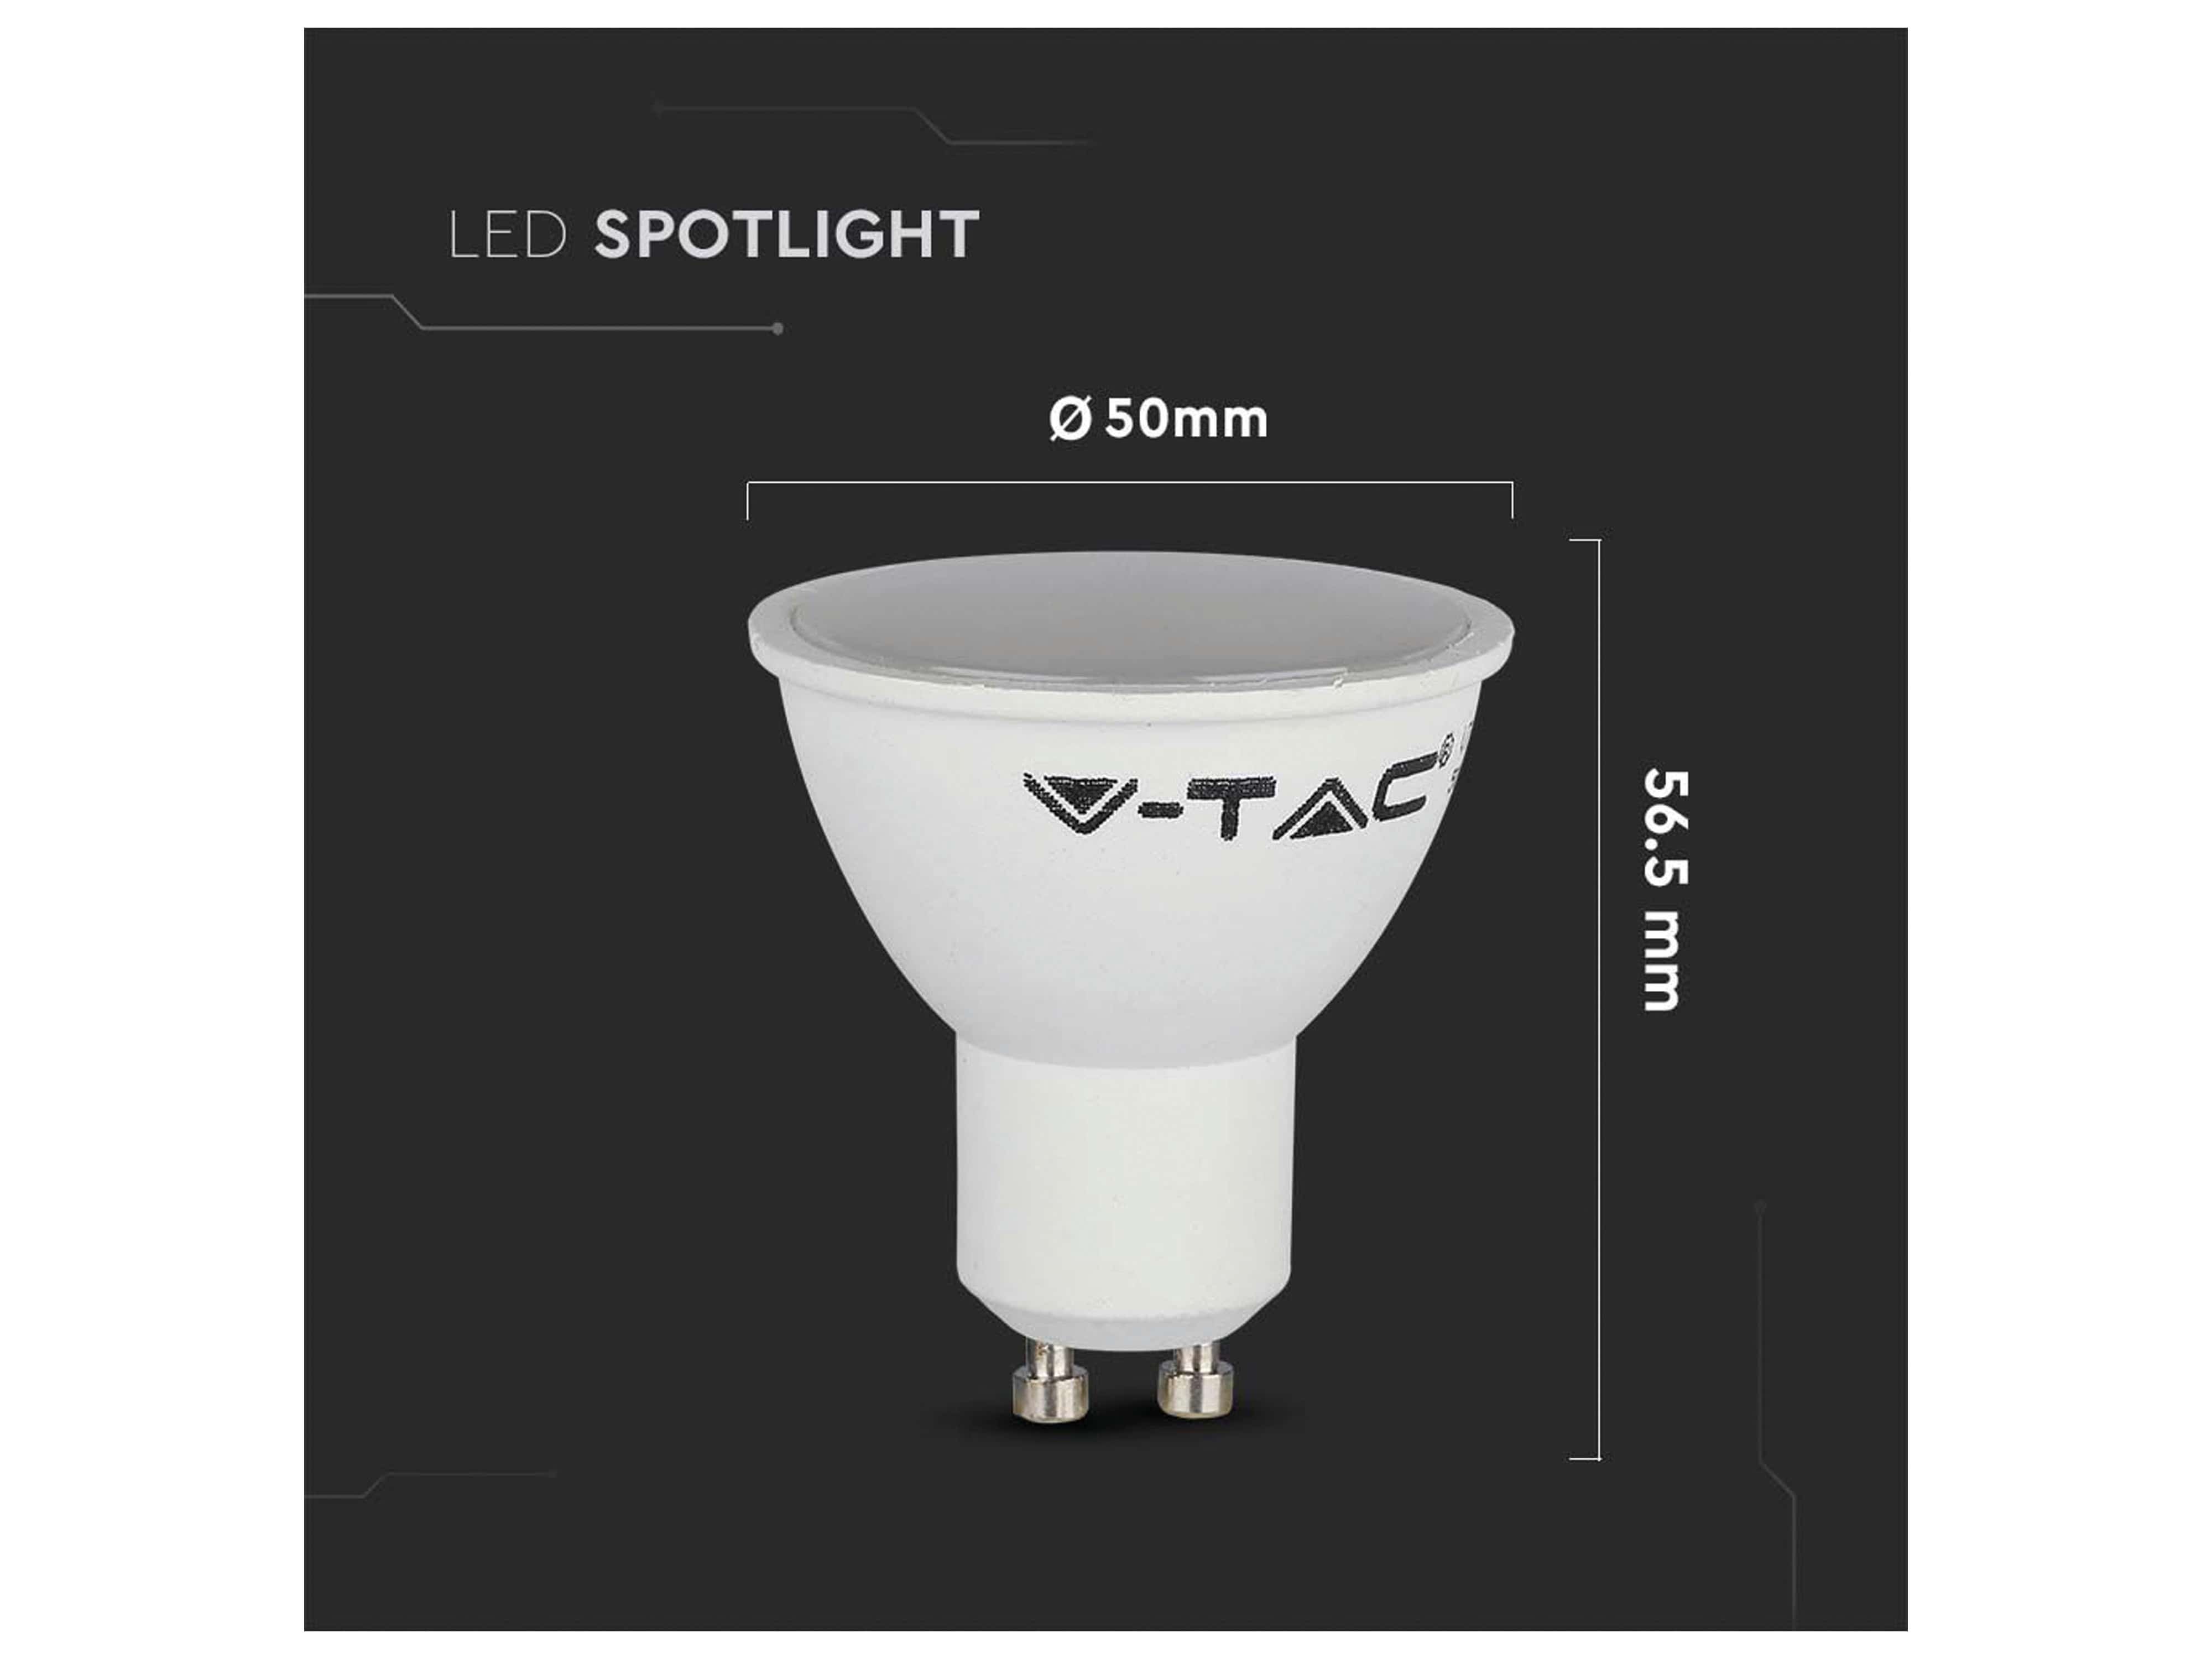 V-TAC LED-SMD-Lampe, PAR16, GU10, EEK: F, 4,5W, 400lm, 3000K